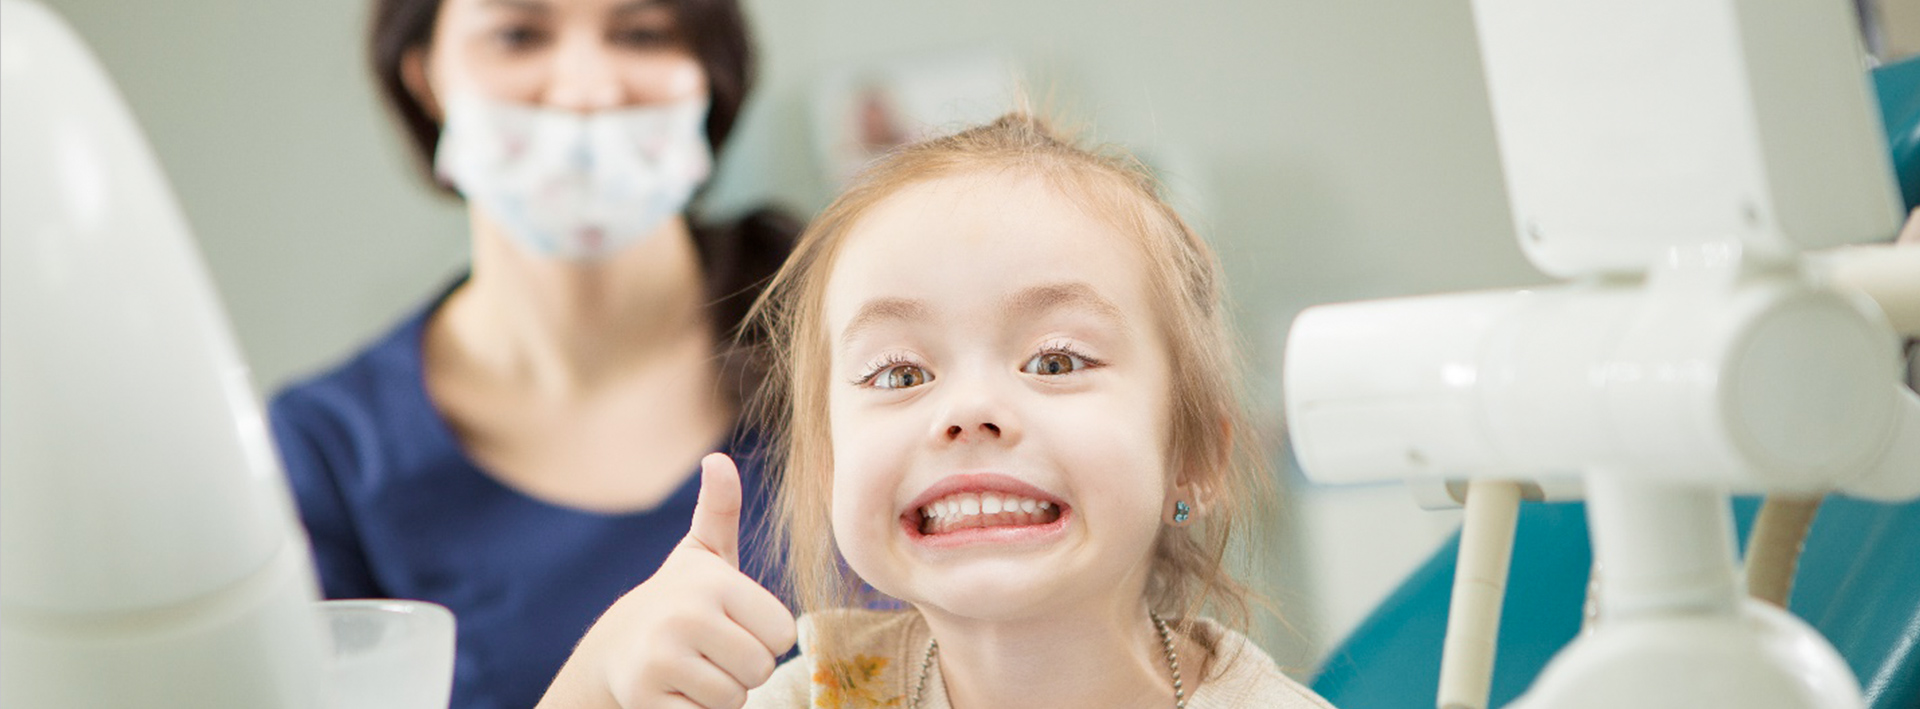 Детская стоматология в томске томск стоматологии по омс